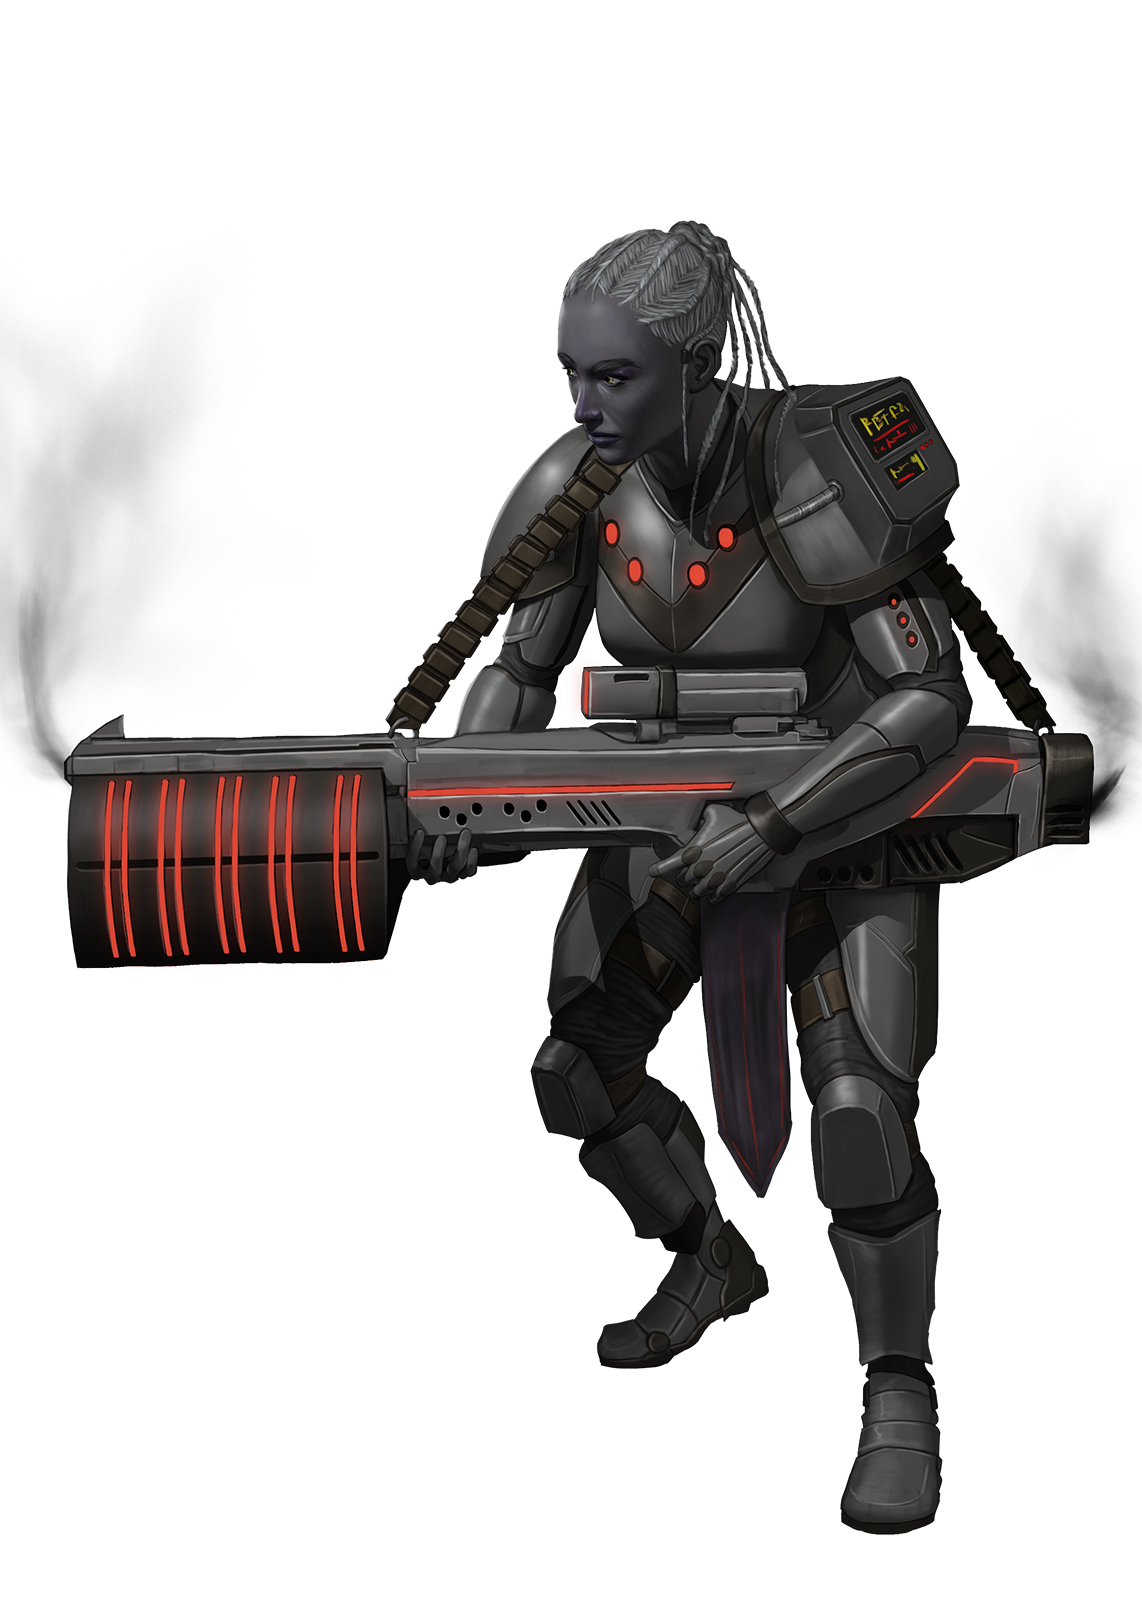 Damai Guard in full armor, wielding a large rifle